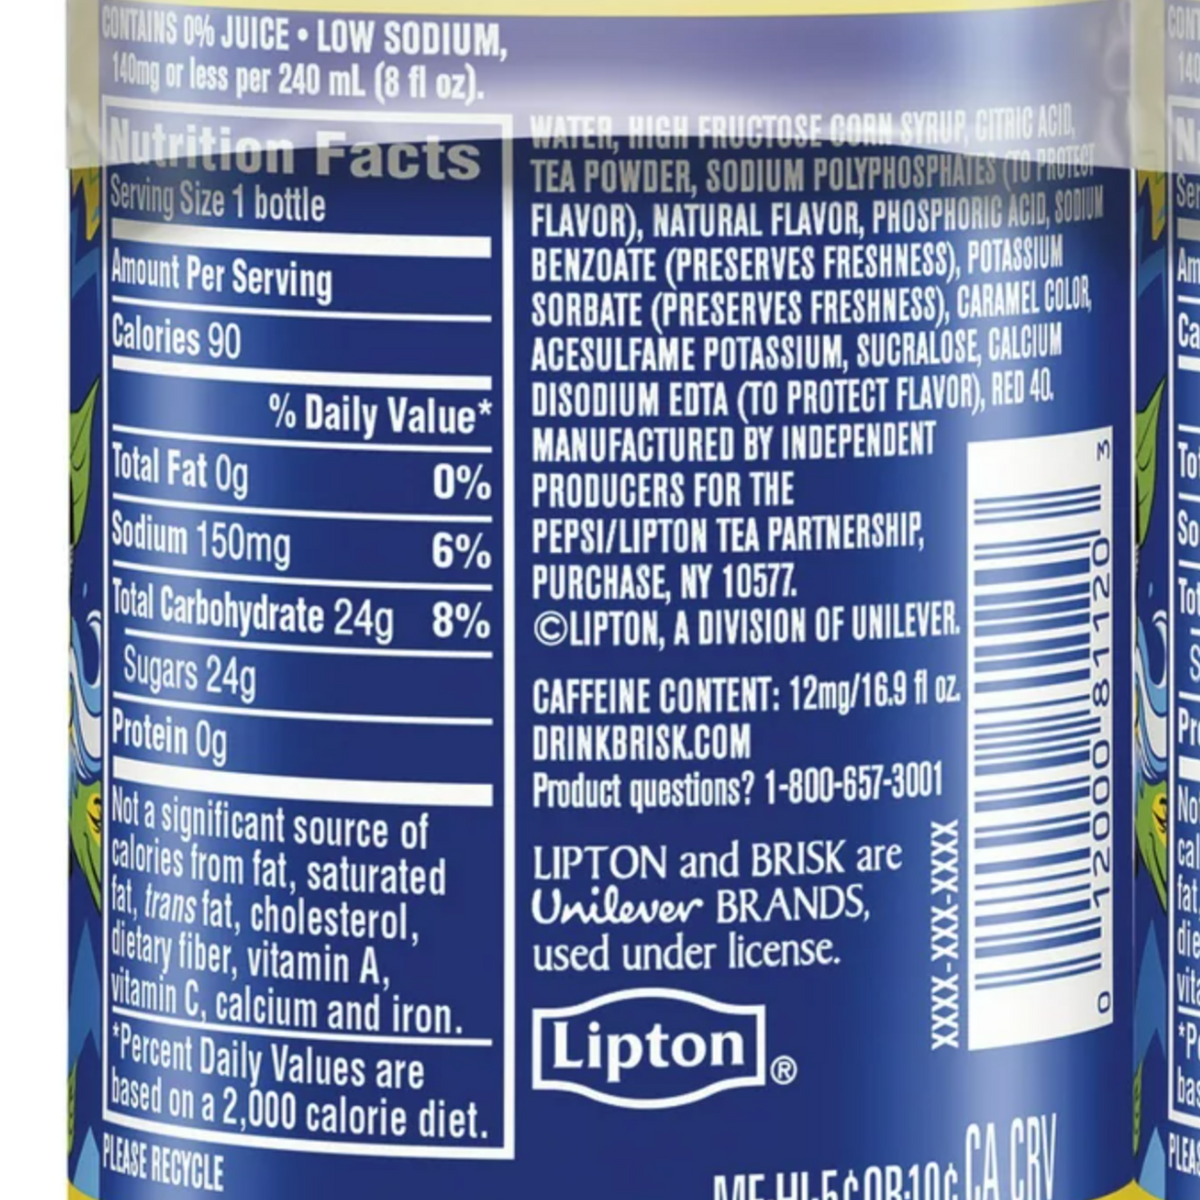 Lipton Brisk Lemon Iced Tea, 36 pk./12 oz.